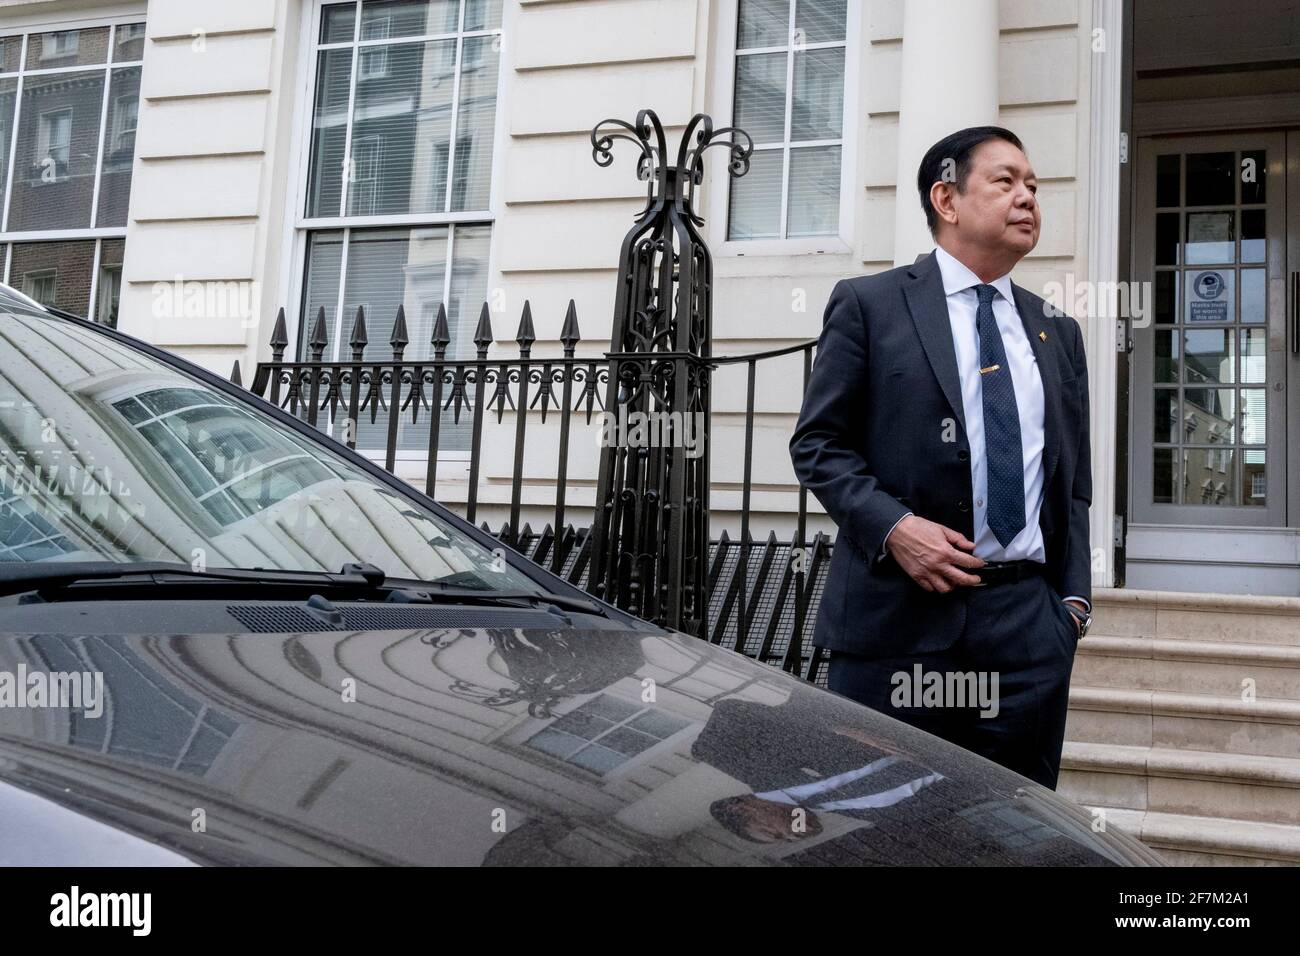 L'ex ambasciatore del Myanmar a Londra, Kyaw Zwar Minn, che ha trascorso la notte in macchina dopo che l'addetto militare del suo paese gli ha negato l'ingresso nella sua ambasciata, ritorna senza accesso, l'8 aprile 2021, a Londra, Inghilterra. Il governo democraticamente eletto in Myanmar è stato rovesciato a febbraio da un colpo di stato guidato dai militari. Foto Stock